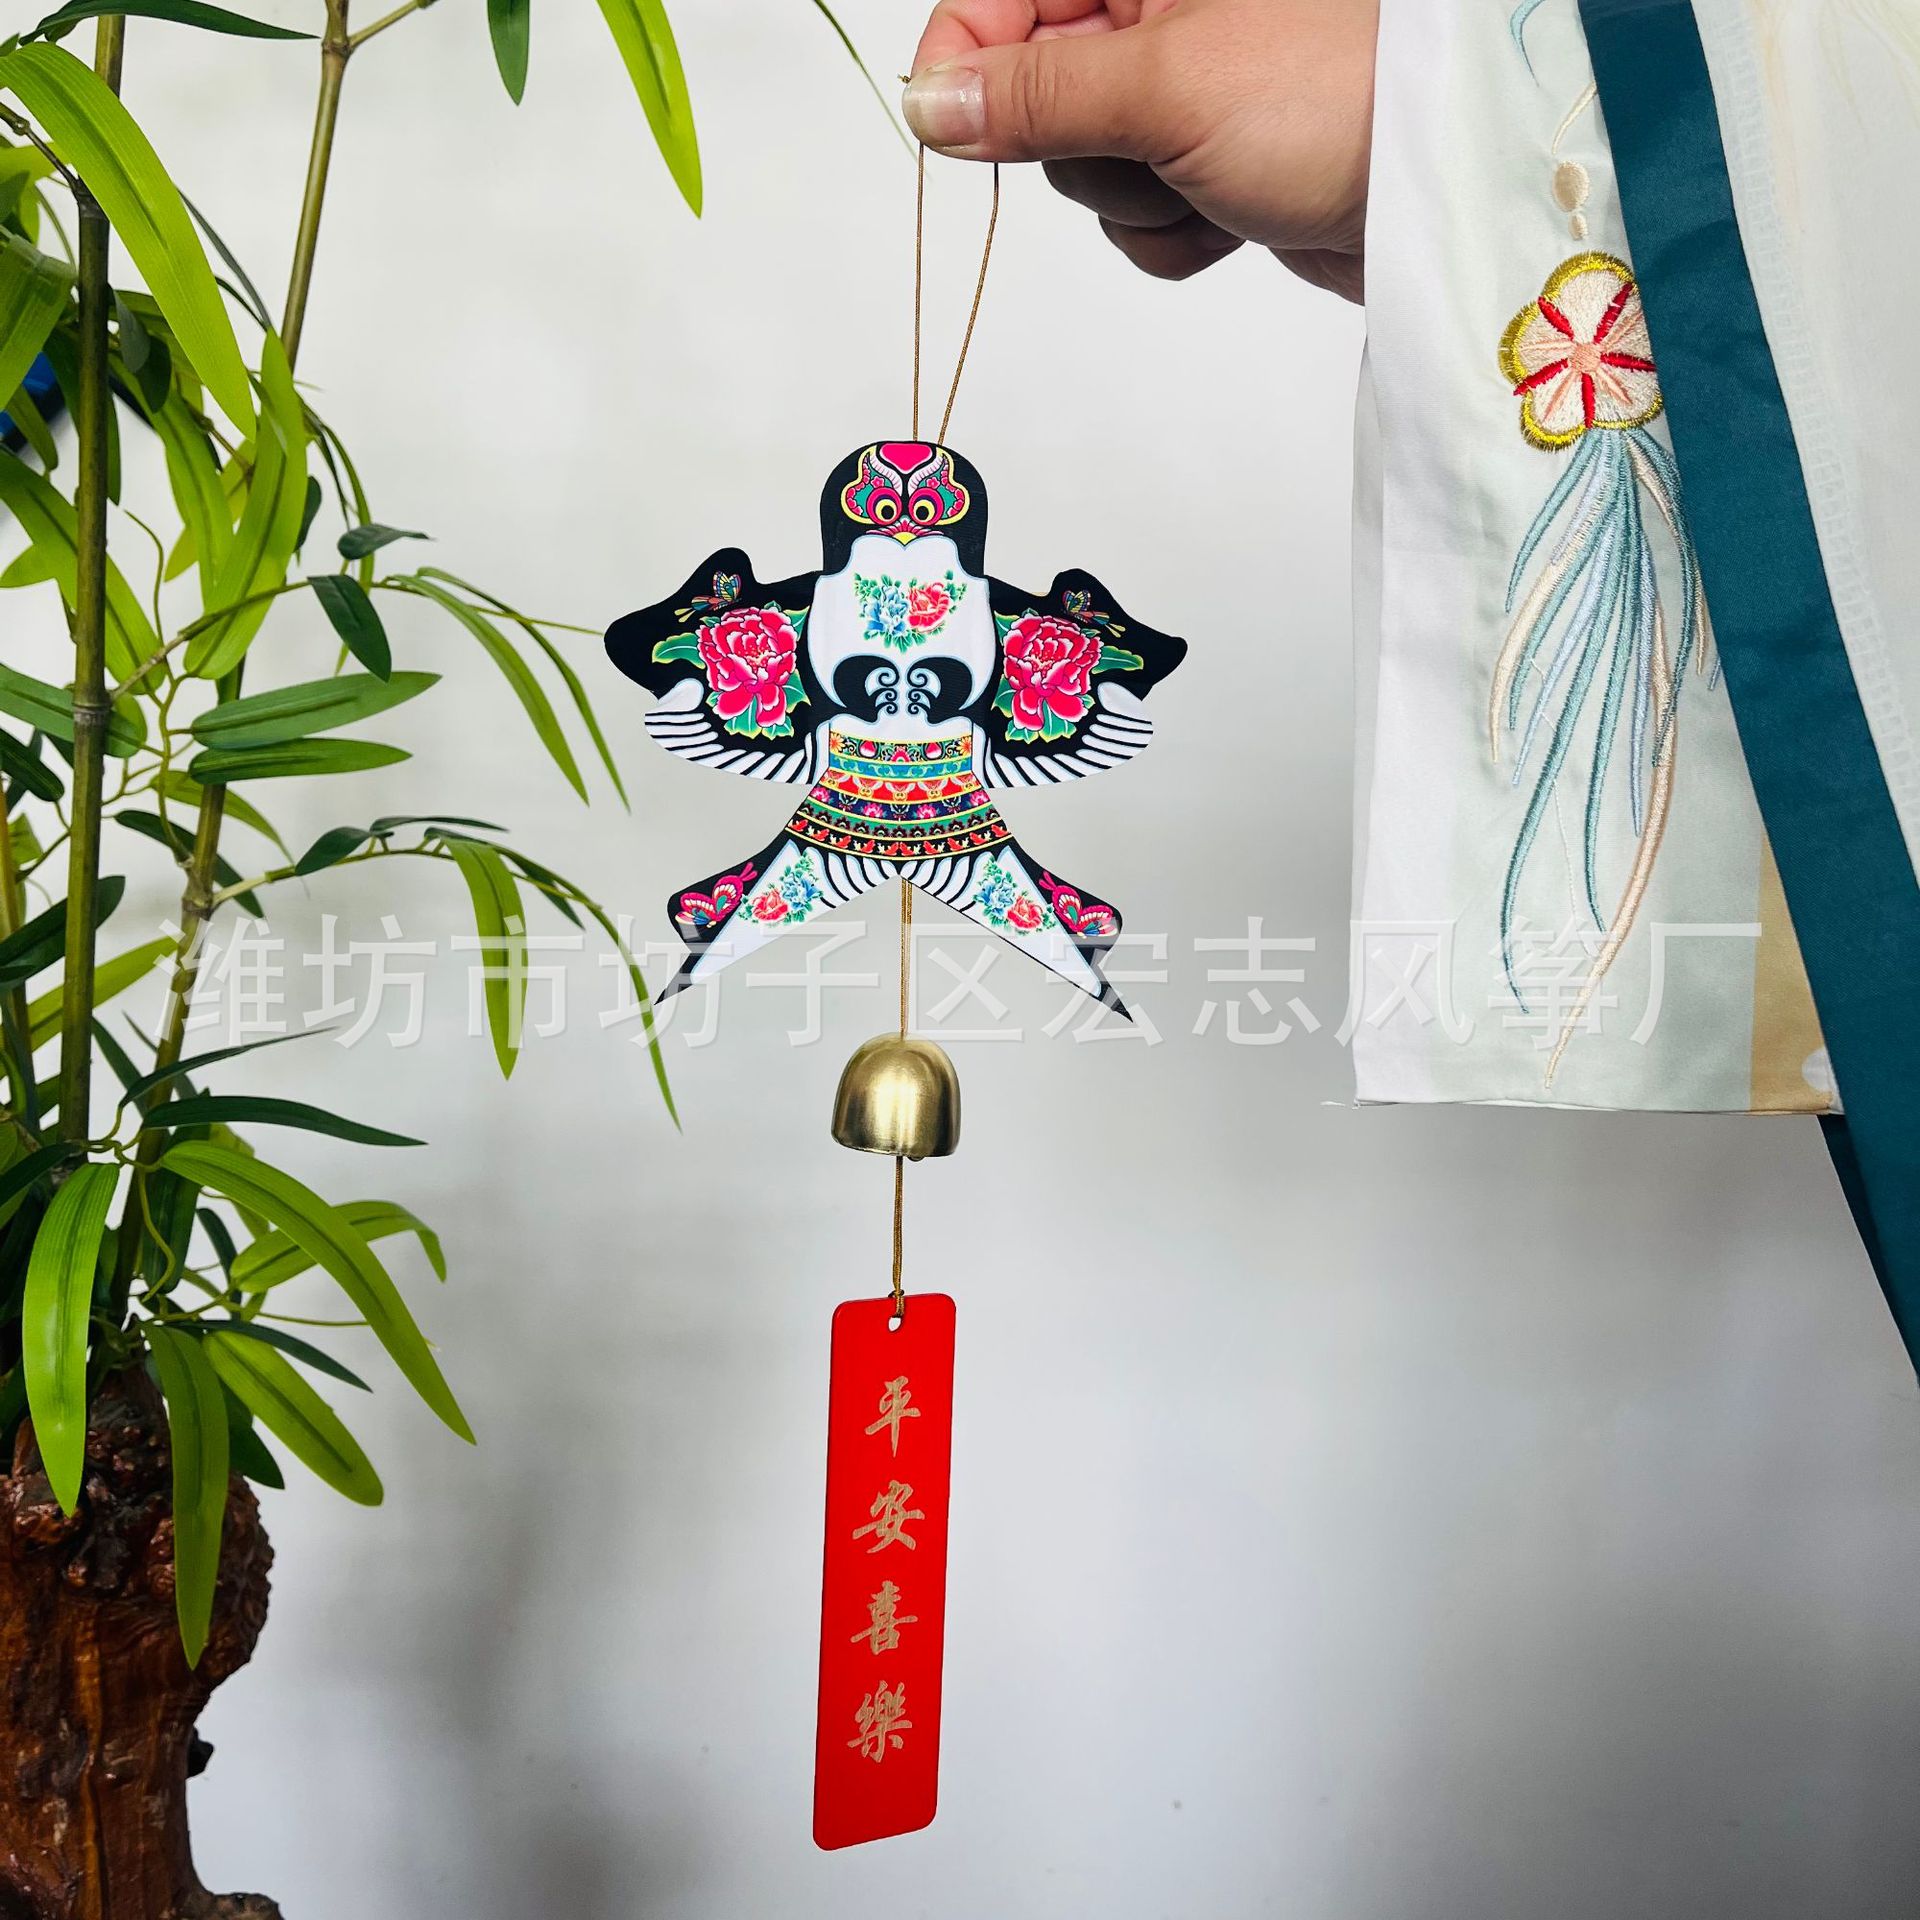 Mini Kite Wind Chimes Kite Entry Entrance Pendant Traditional Kite Bell Handmade Gift B & B Bedroom